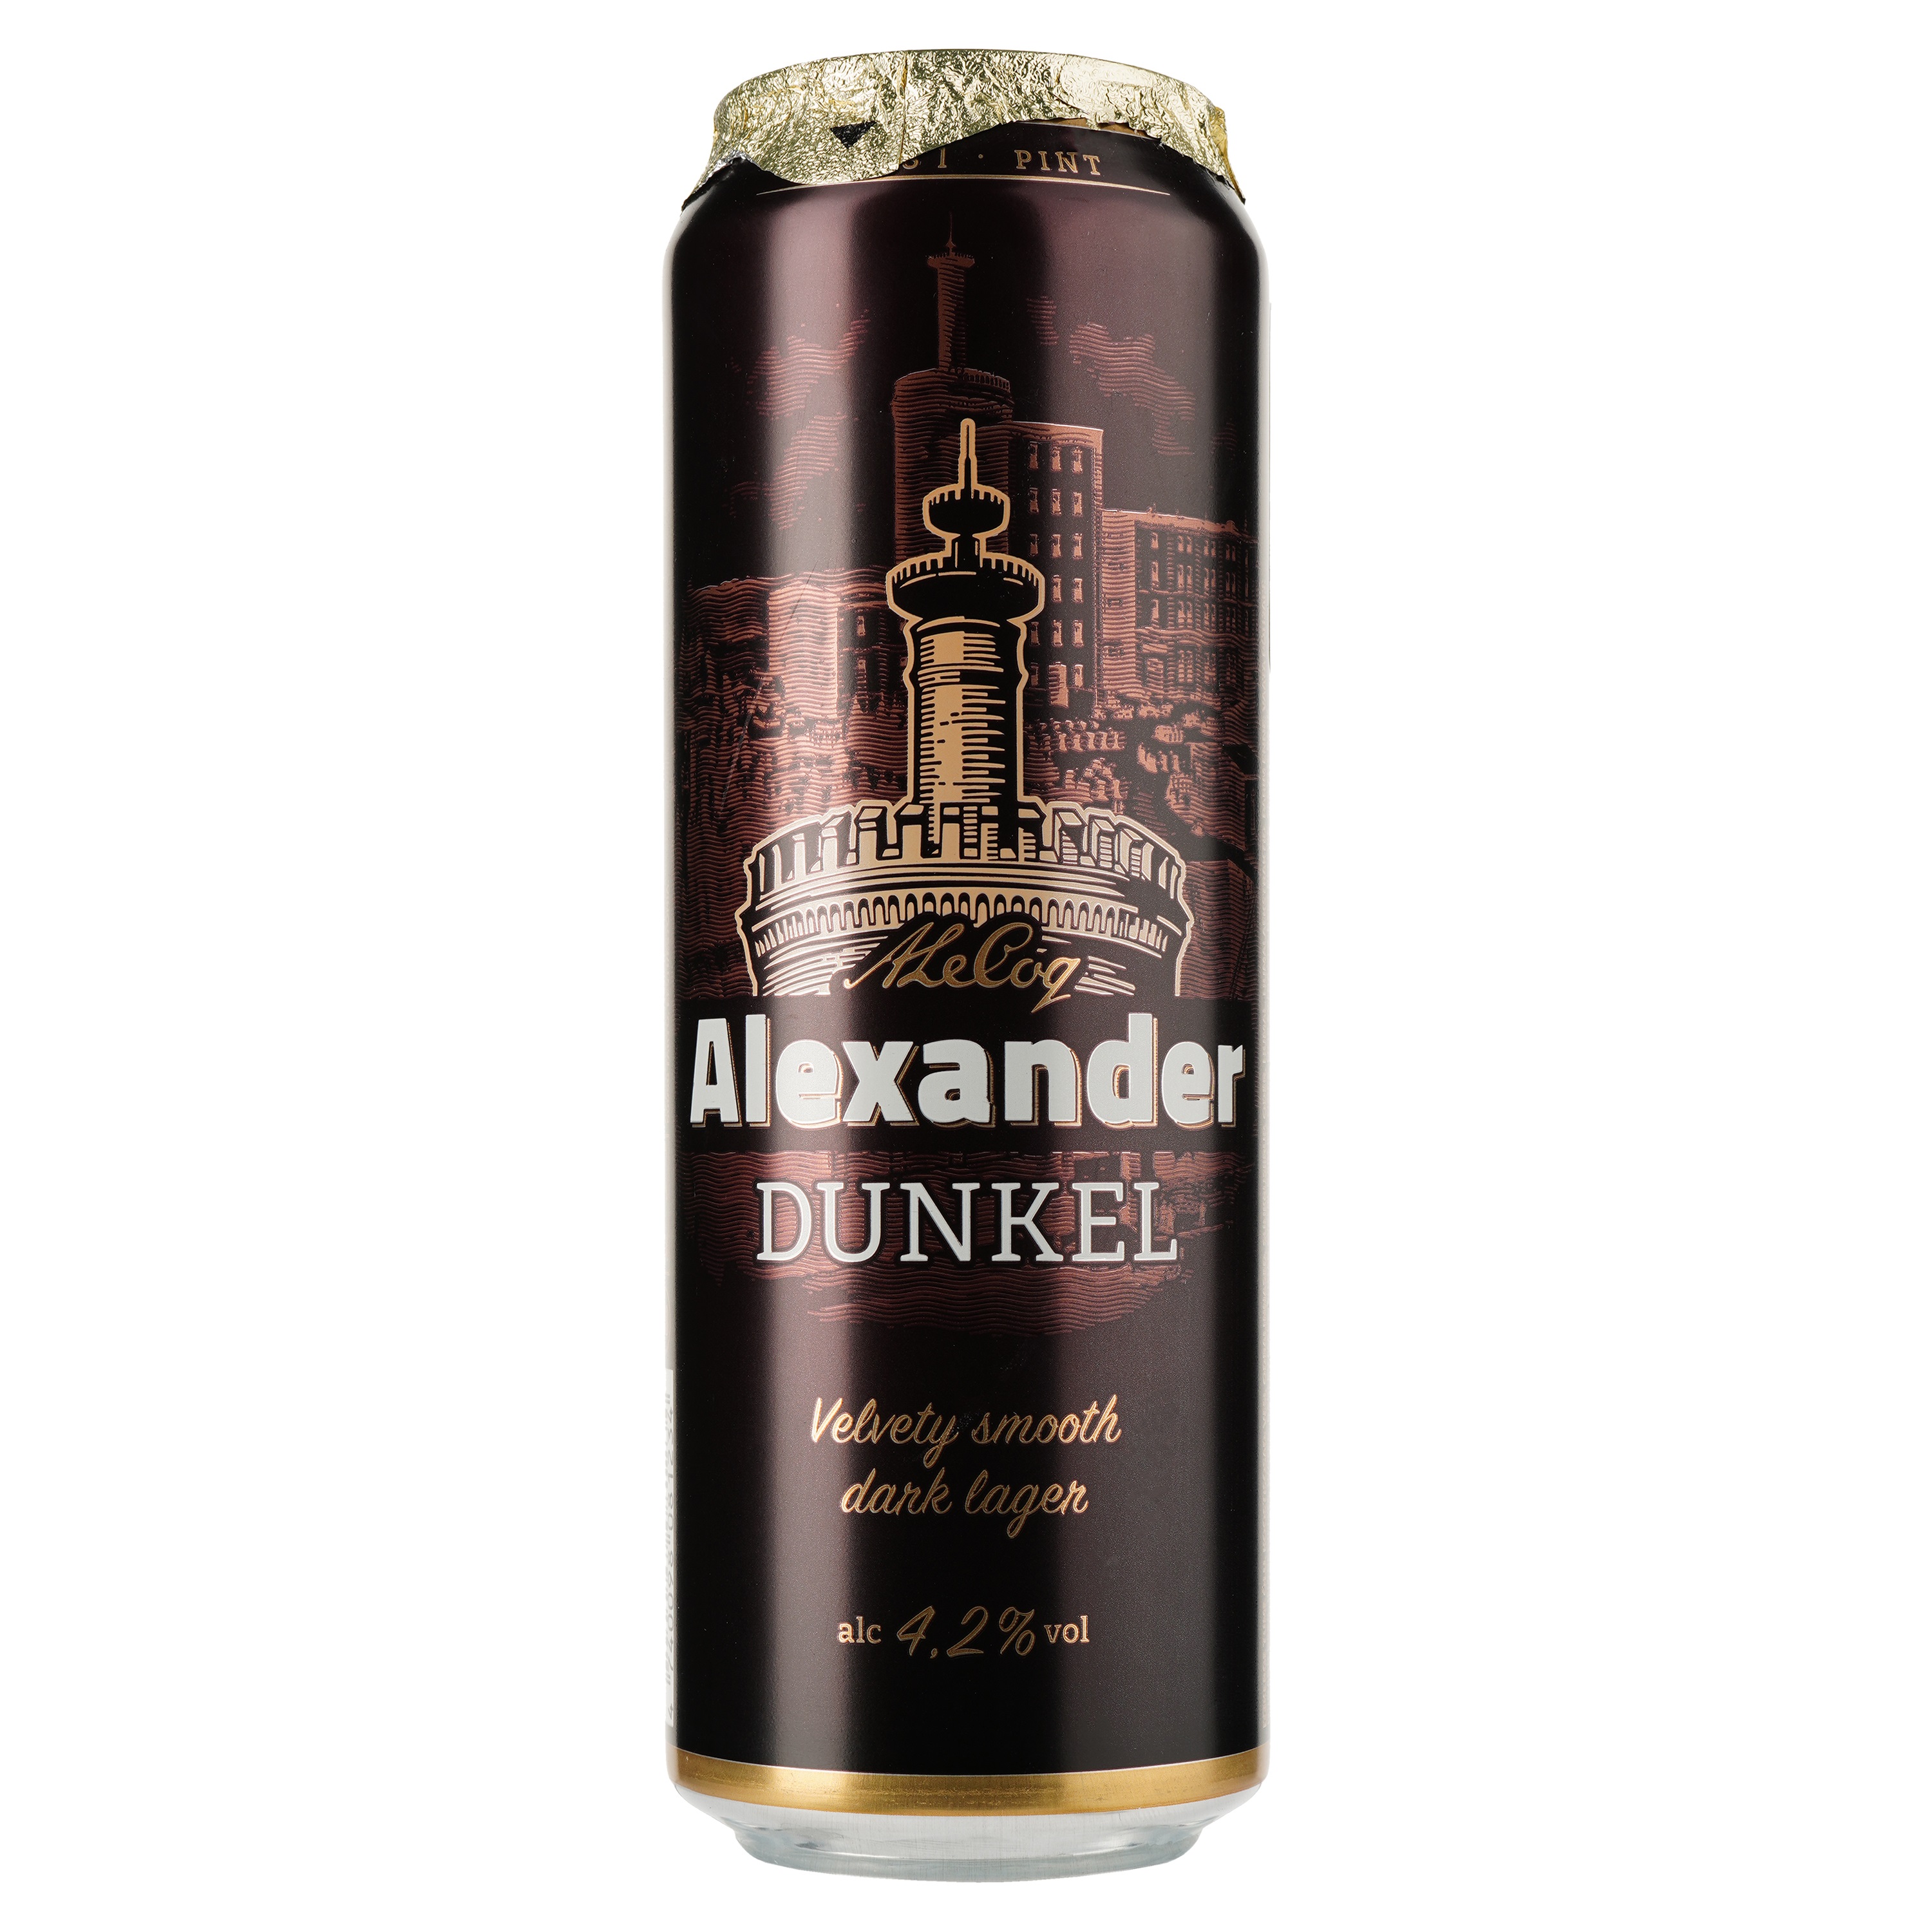 Пиво A. Le Coq Alexander Dunkel, темное, фильтрованное, 4,2%, ж/б, 0,568 л - фото 1